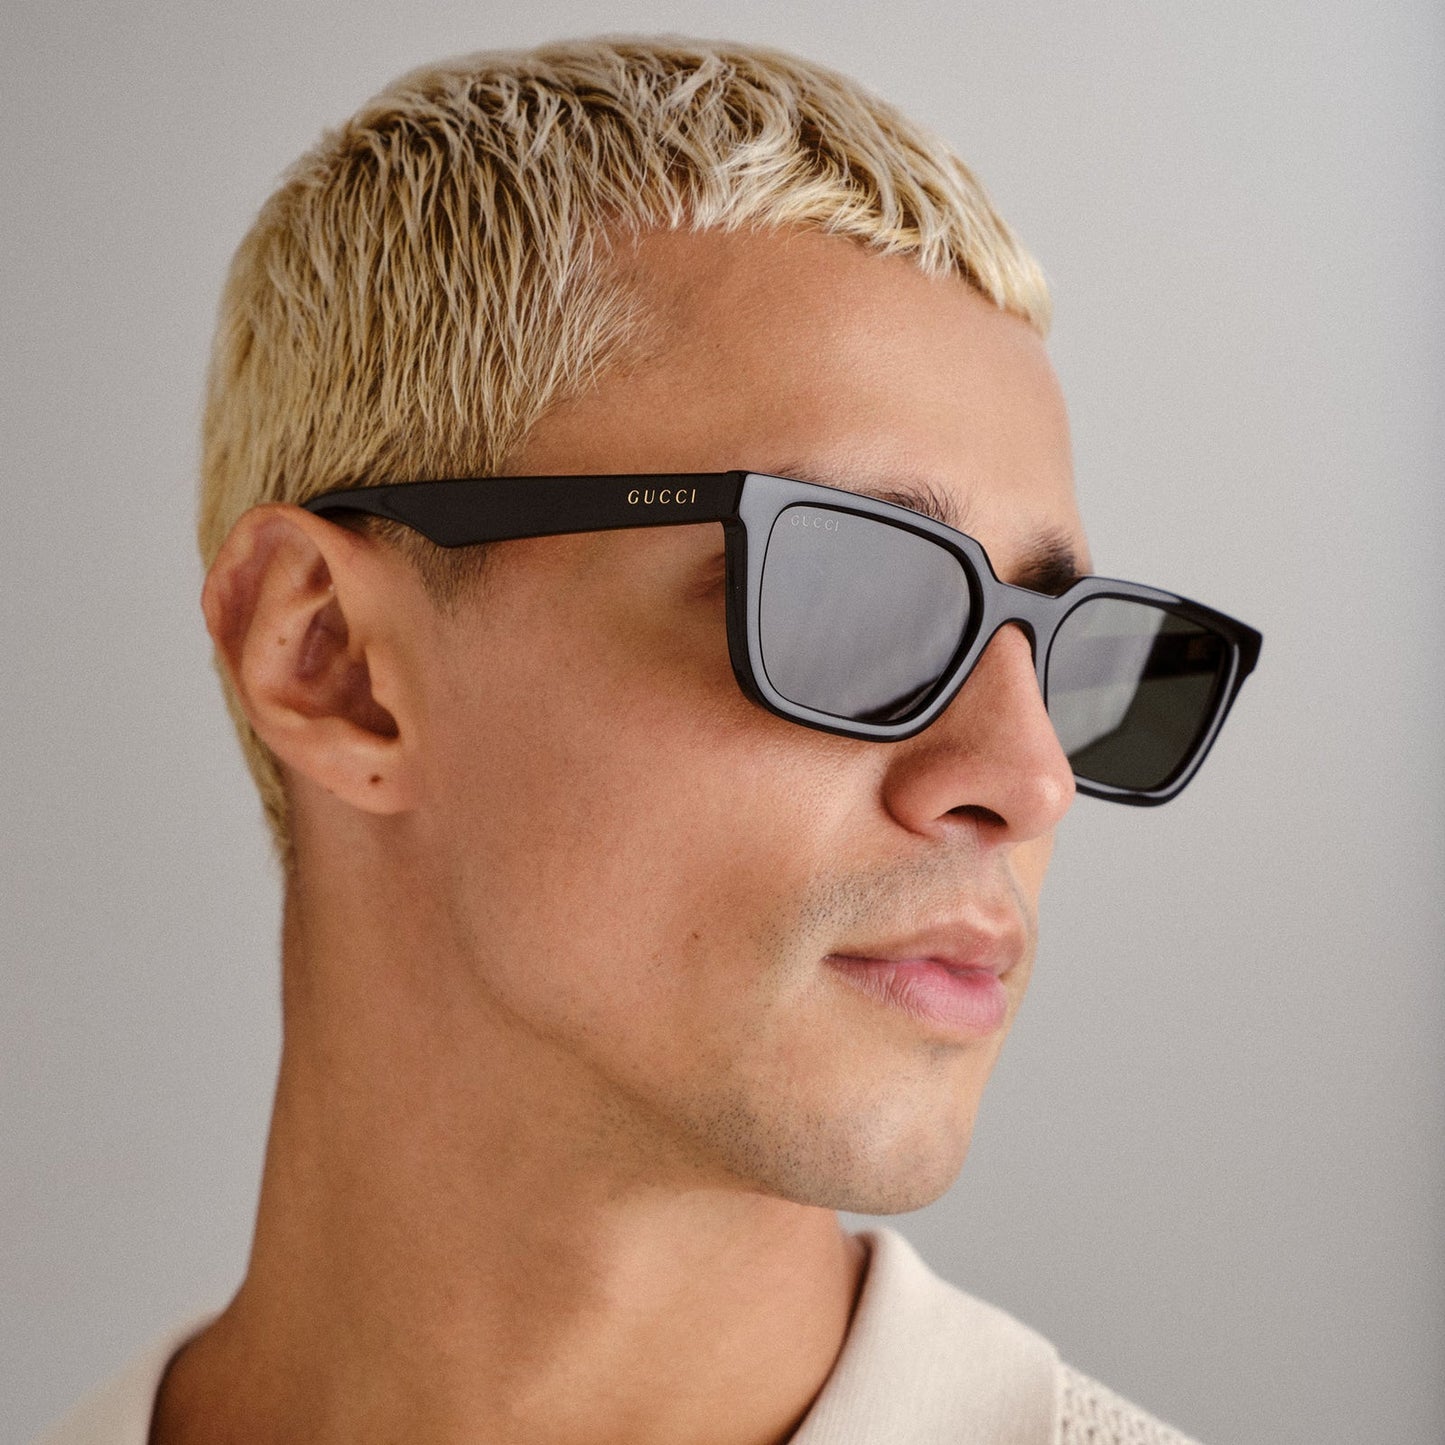 Gucci GG1539S-001 55mm New Sunglasses